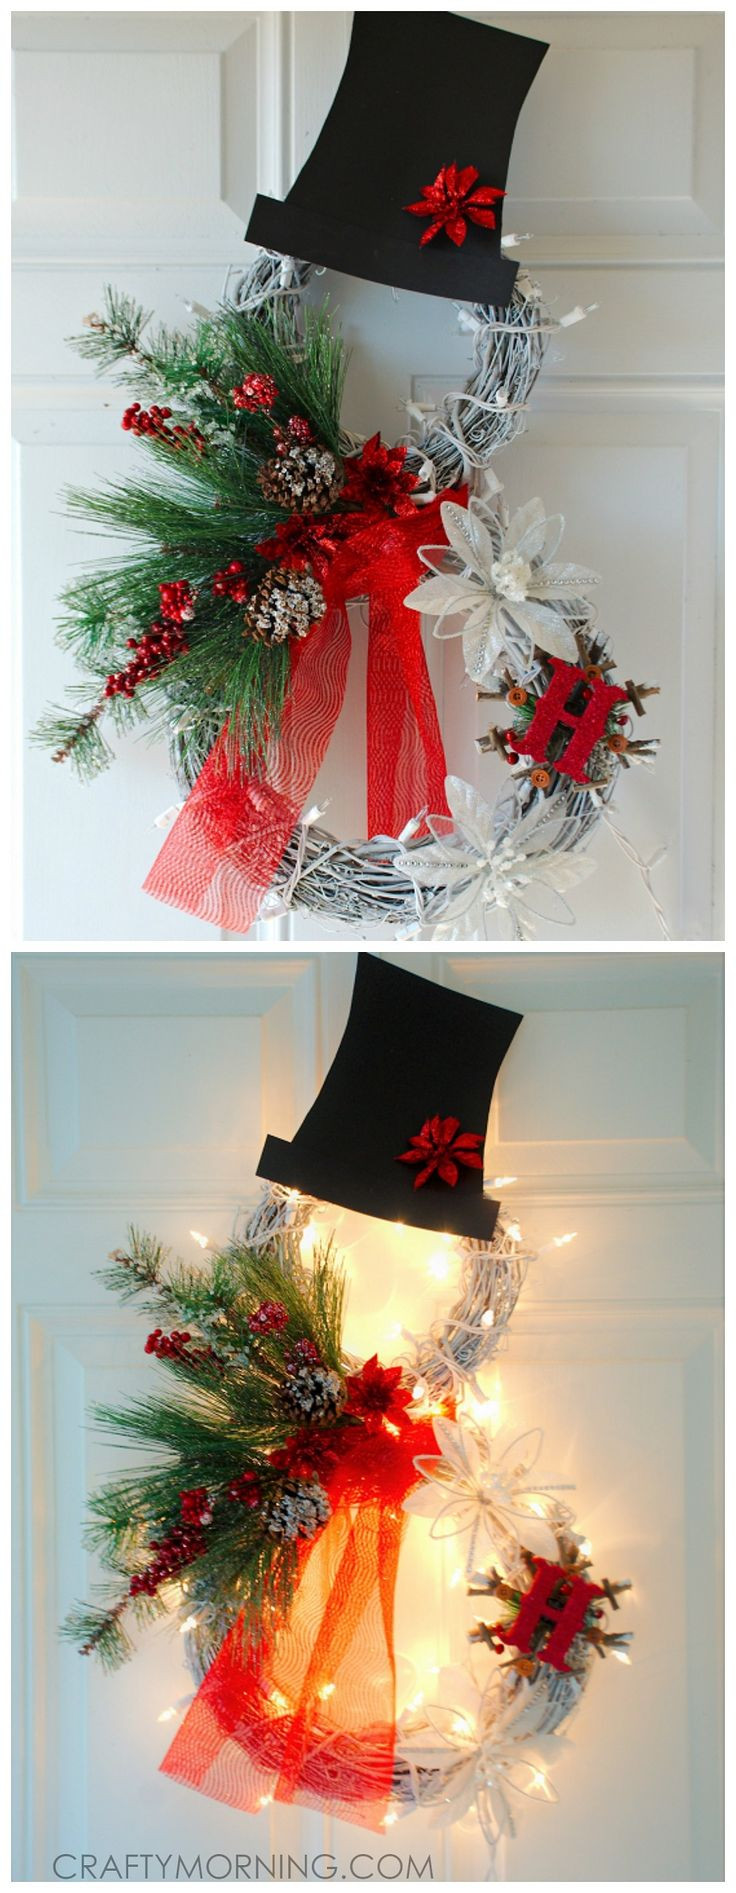 DIY Christmas Wreath Ideas
 25 best ideas about Christmas Wreaths on Pinterest